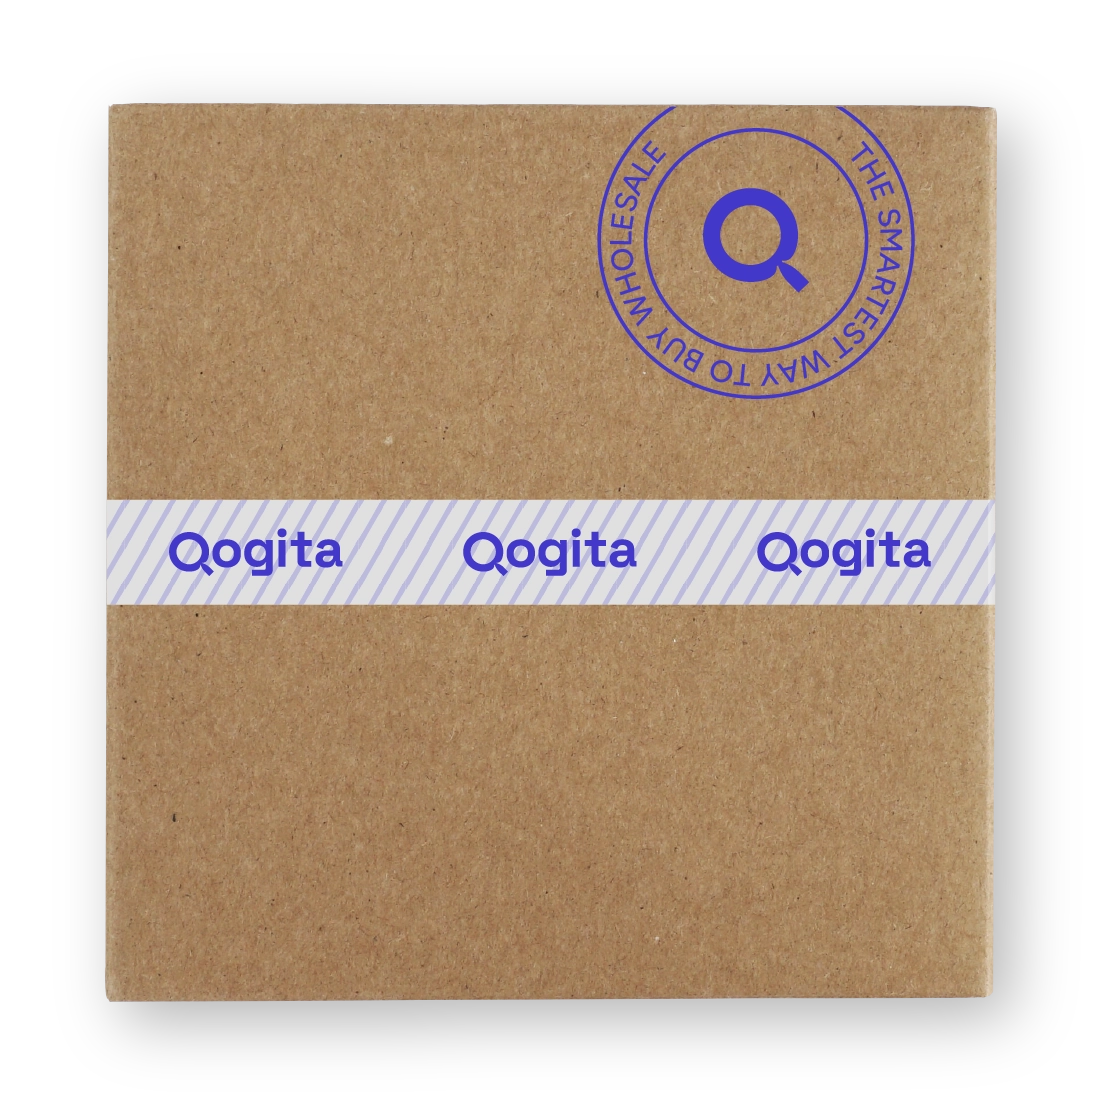 Qogita box